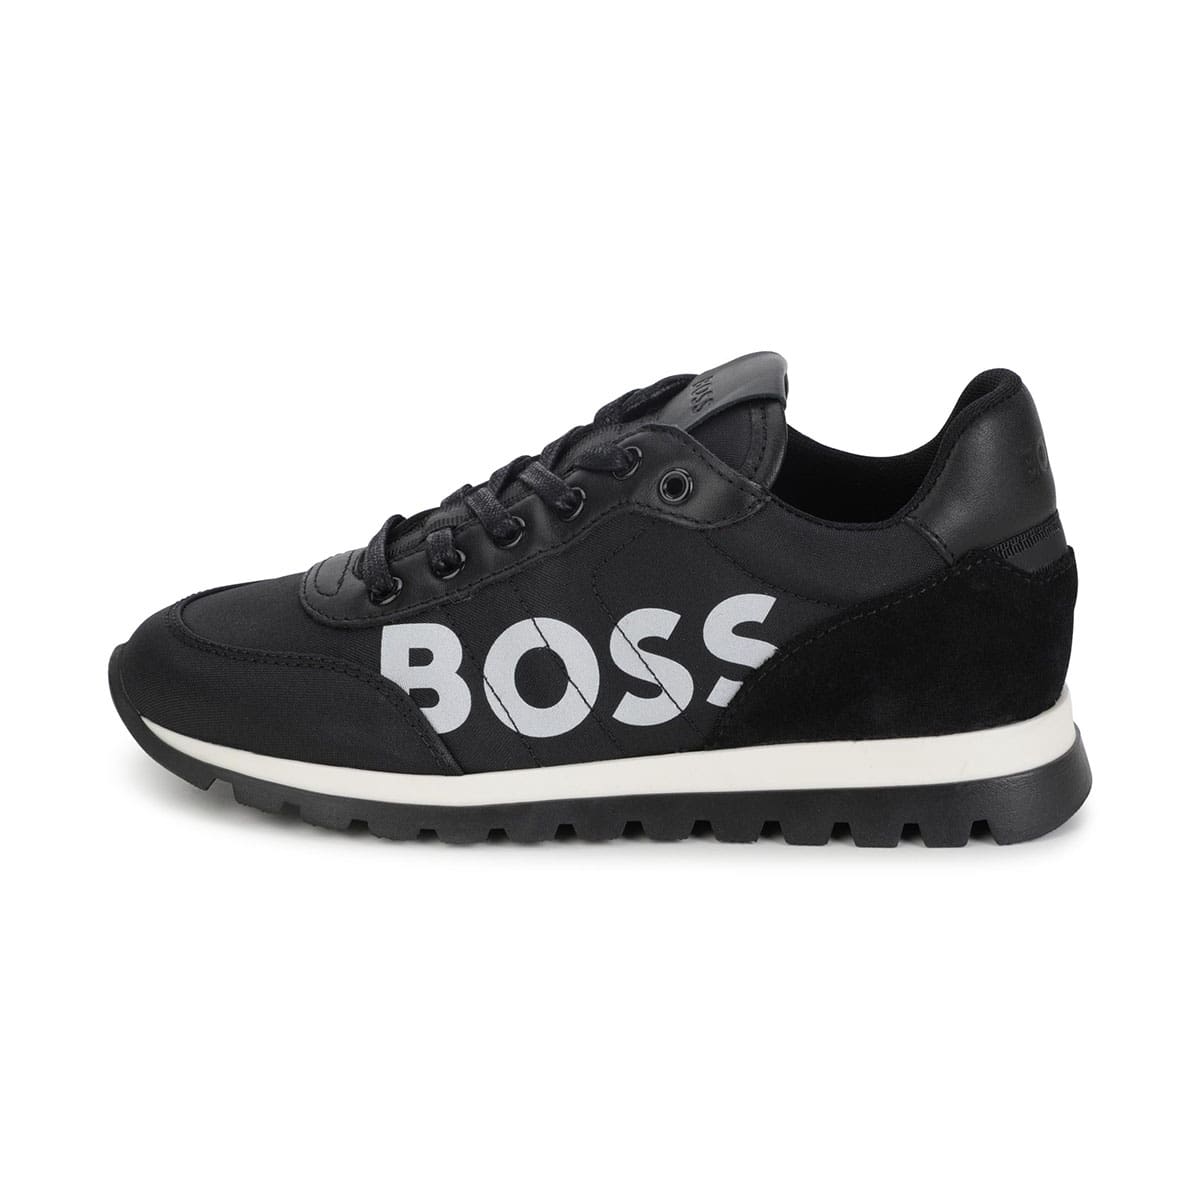 נעלי BOSS בצבע שחור לילדים